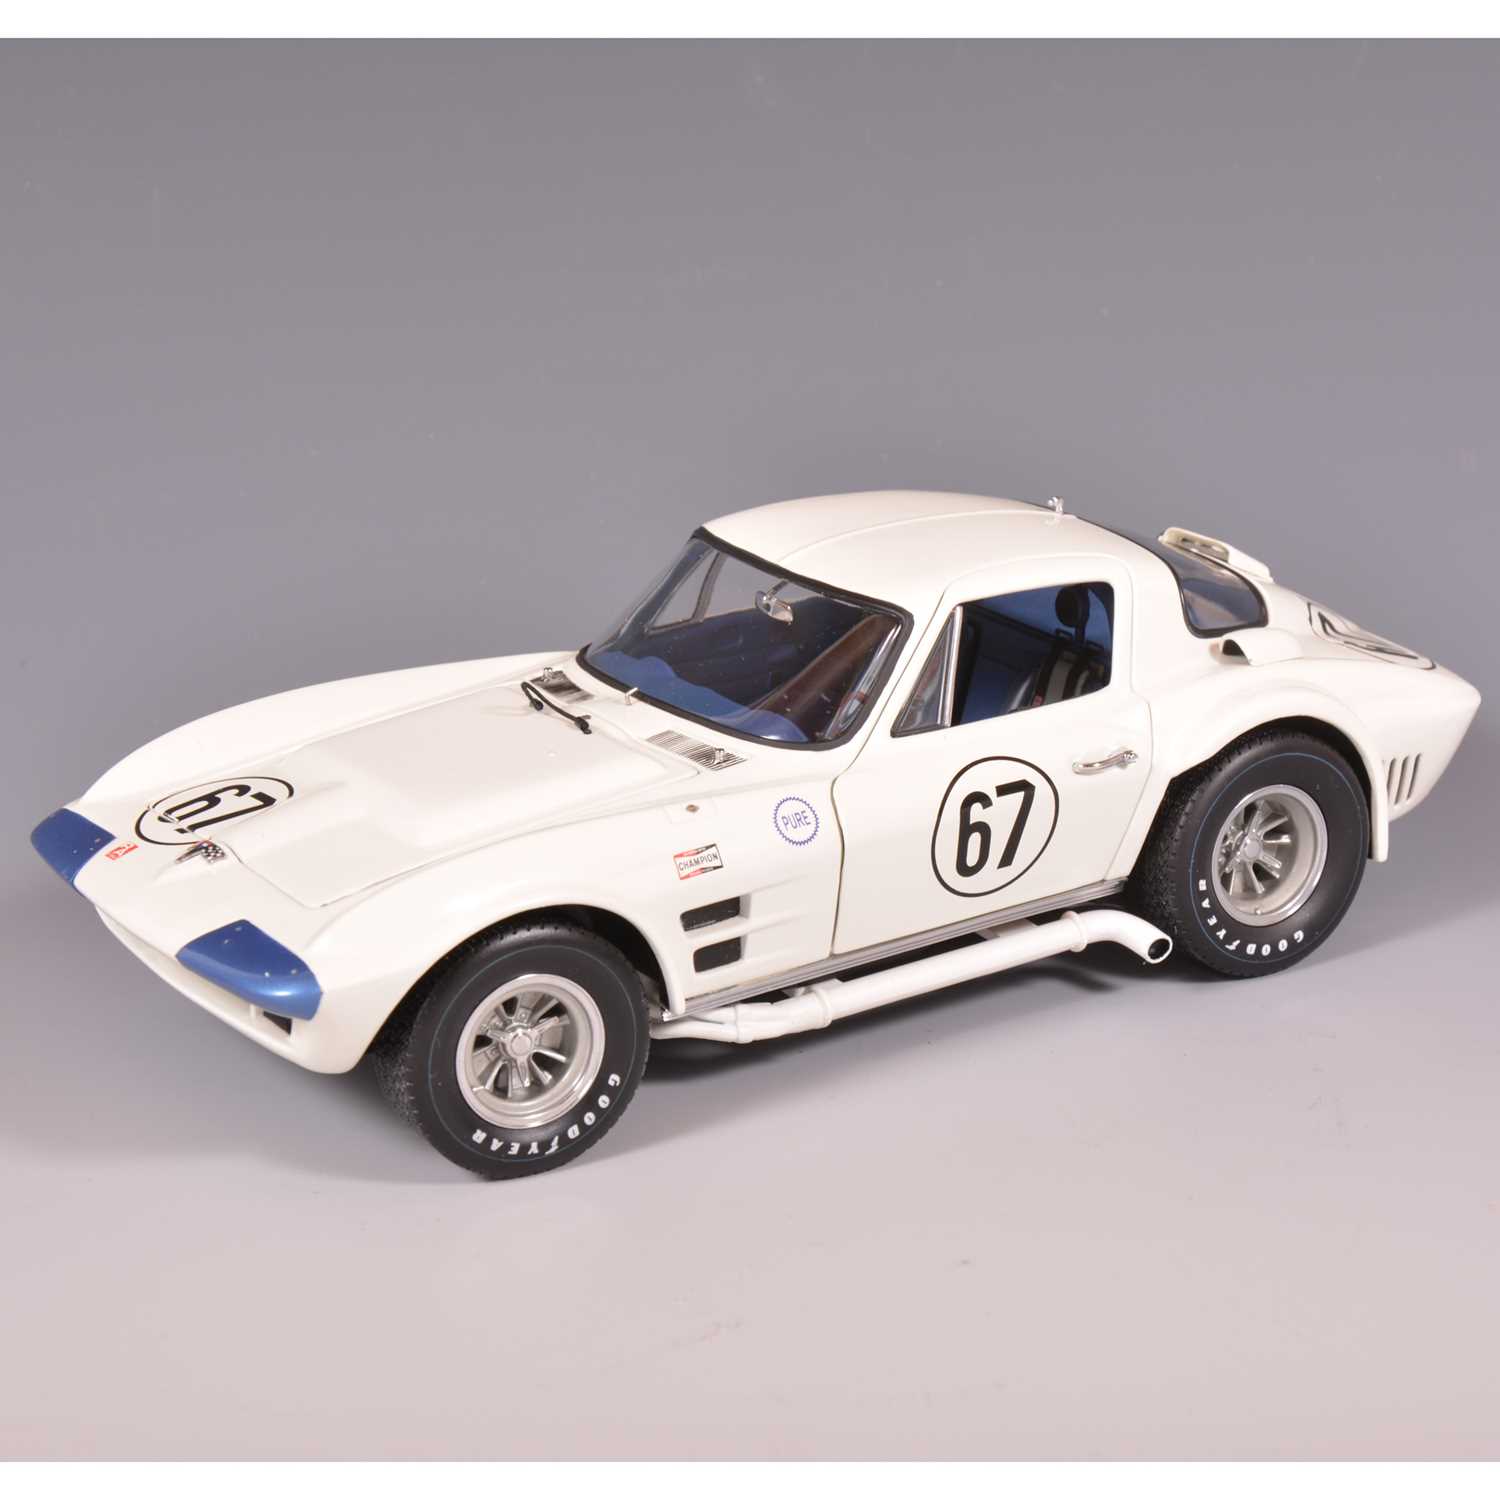 Lot 94 - Exoto 1:18 scale model; Corvette Grand Sport Coupe (1964) - Road America 500